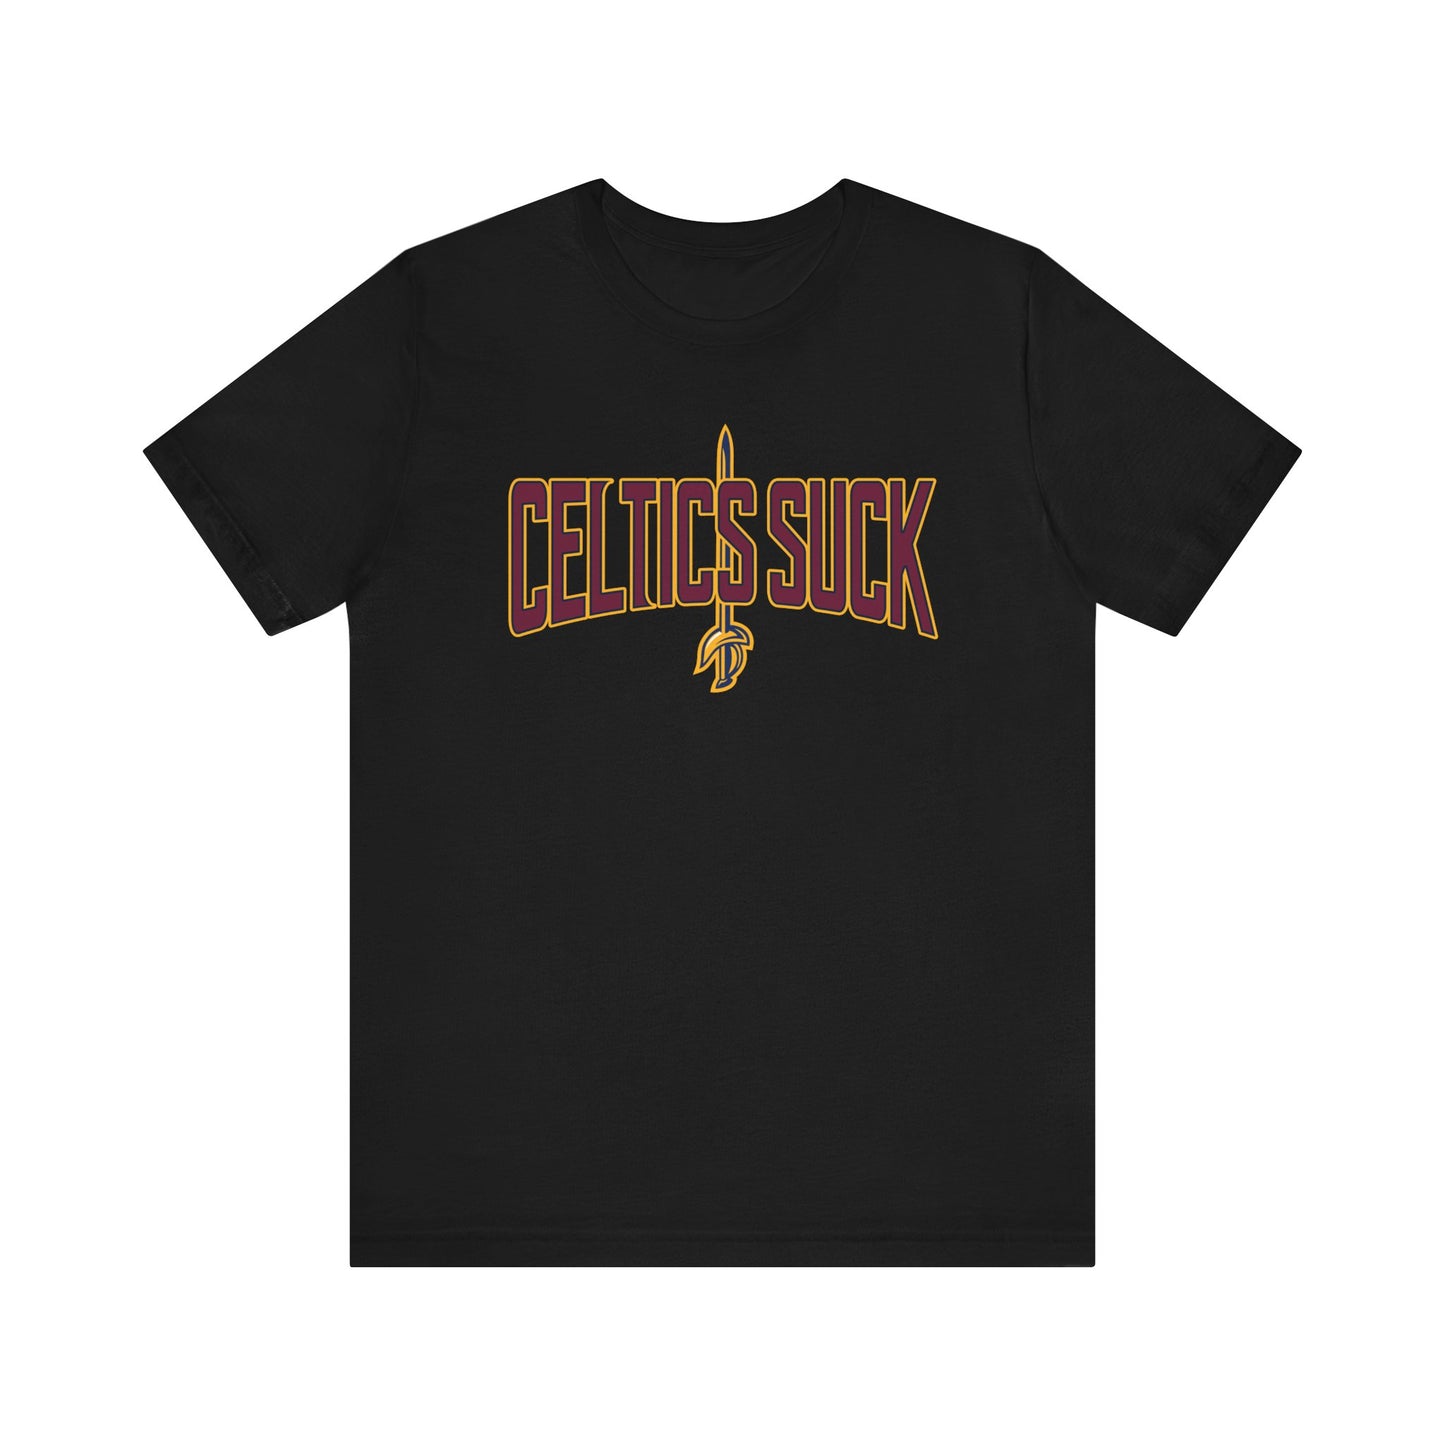 Selltix Suck (for Cleveland fans) - Unisex Jersey Short Sleeve Tee